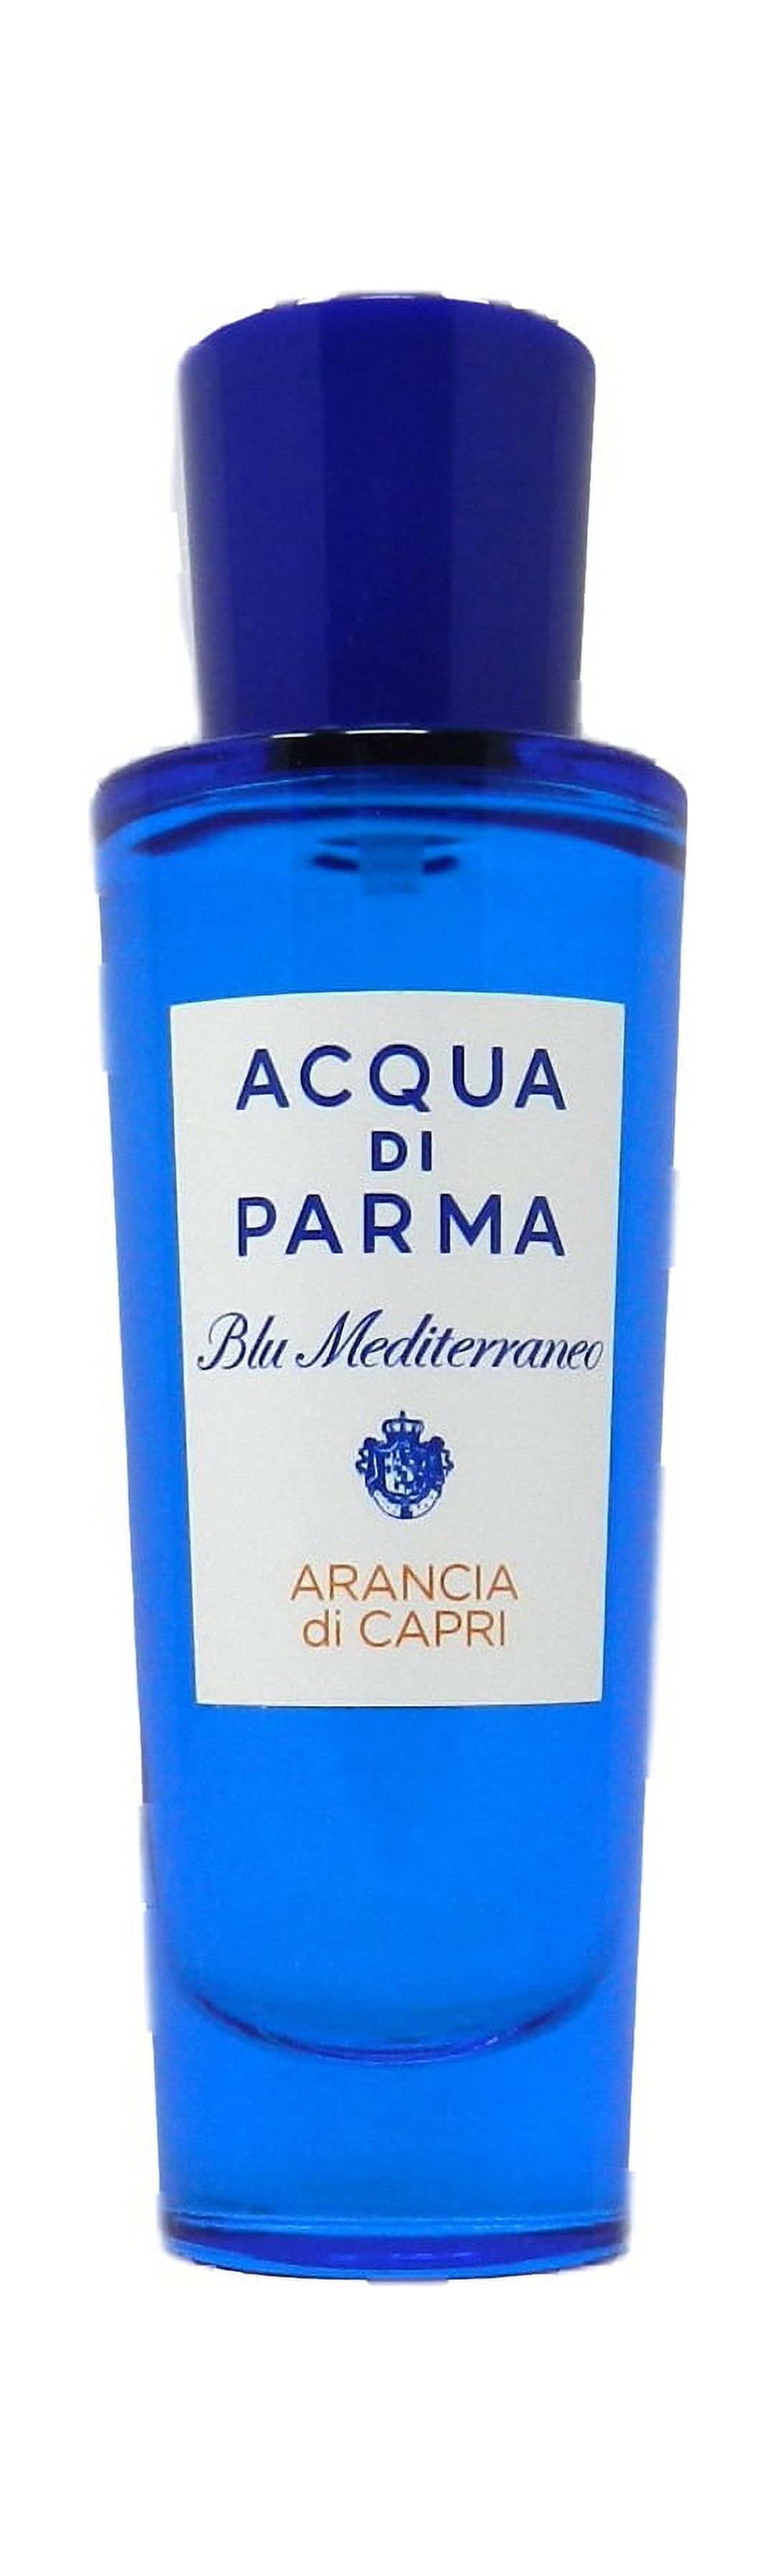 Acqua Di Parma Blu Mediterraneo Arancia Di Capri Eau De Toilette Spray 30ml/1oz - image 1 of 2